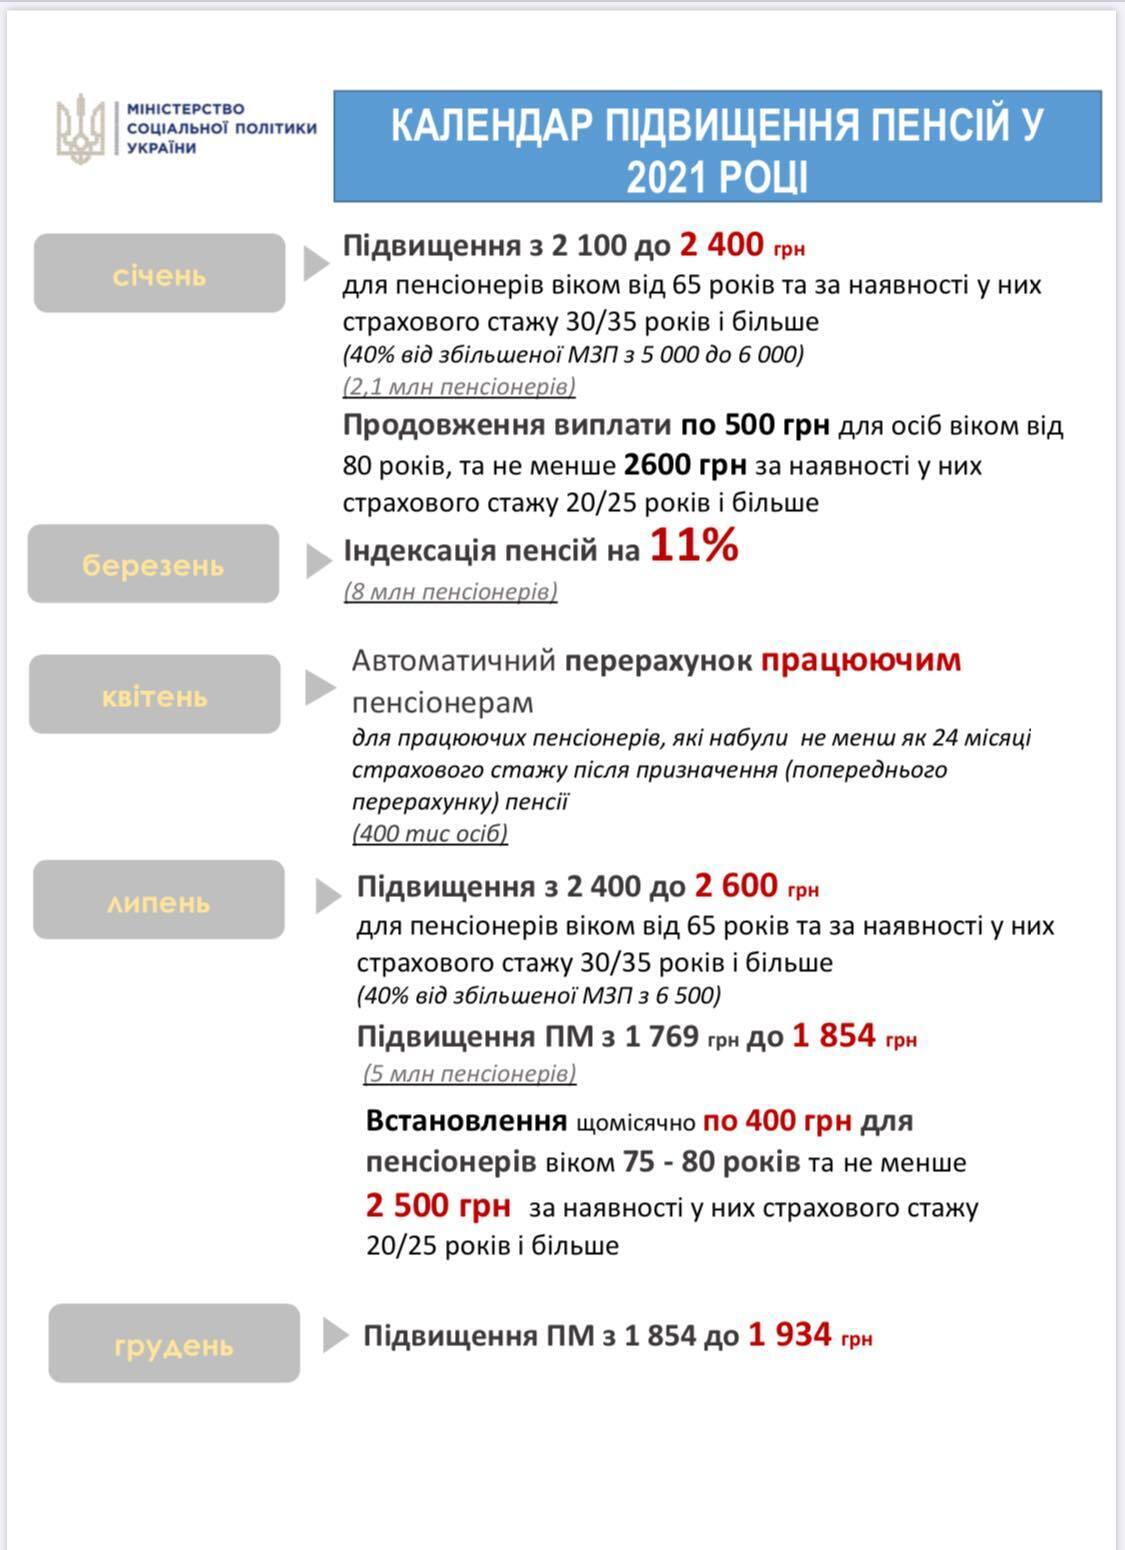 Украинцам пересчитают пенсии из-за минималки: кому заплатят на 300 грн больше